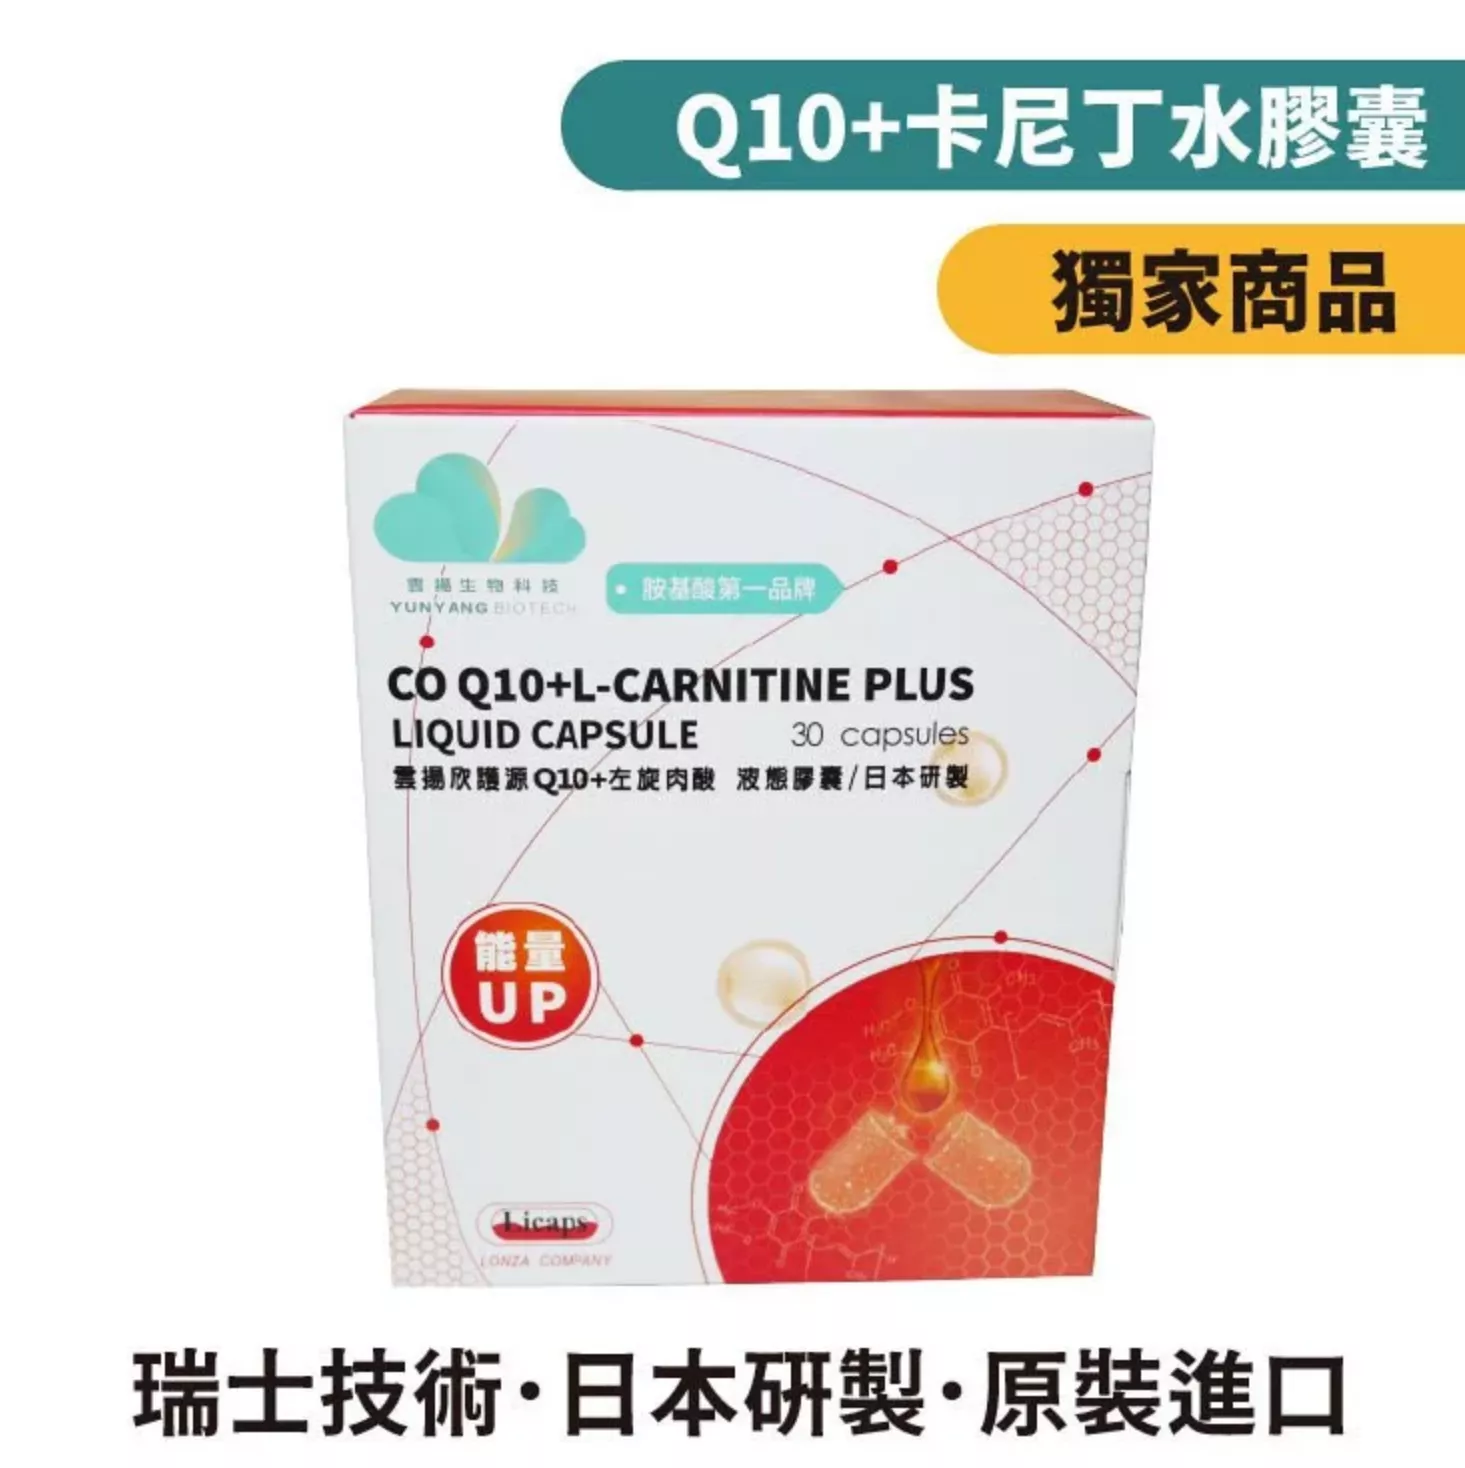 雲揚 欣護源Q10+左旋肉酸液態膠囊 / 肉鹼 / 卡尼丁 / 日本製